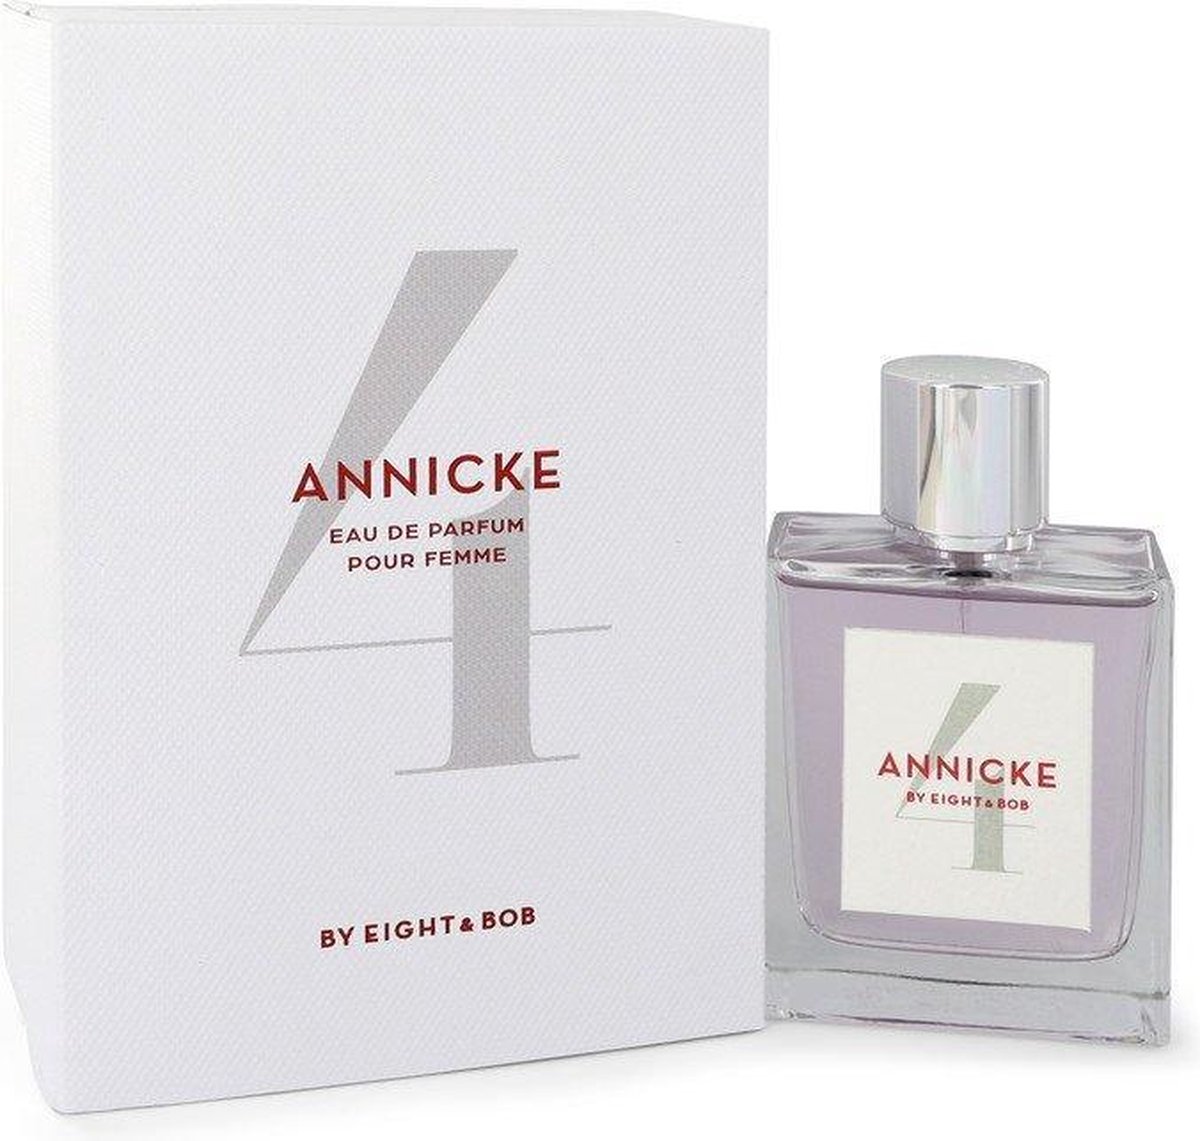 Annicke 4 by Eight & Bob 100 ml - Eau De Parfum Spray